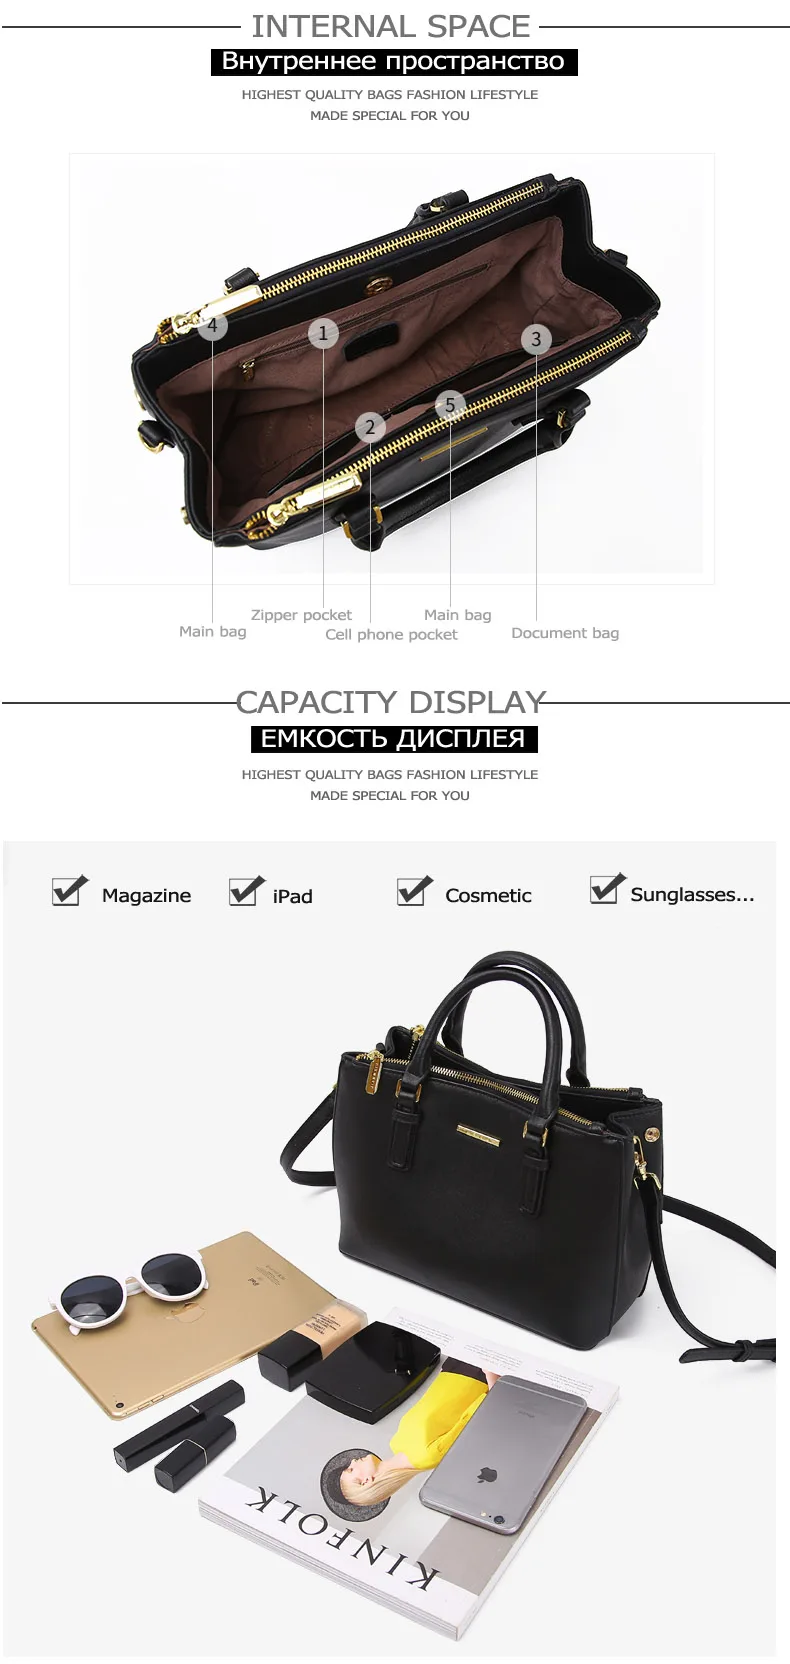 JIANXIU, брендовая сумка из натуральной кожи, роскошные сумки, женские сумки, дизайнерские, высокое качество, перекрестная текстура, сумка-тоут, женская сумка на плечо